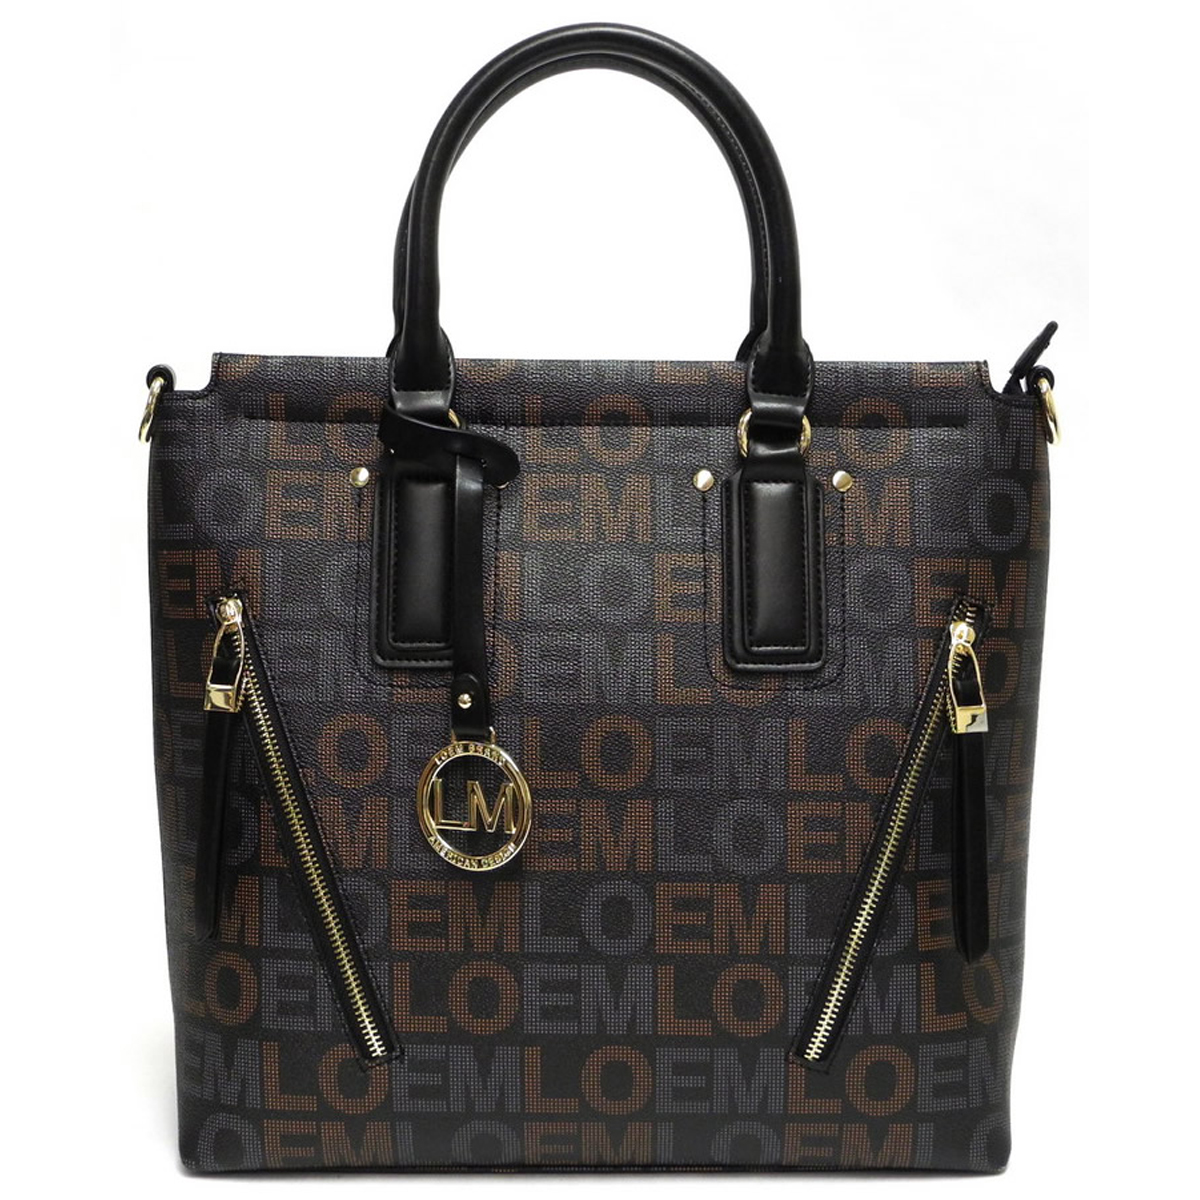 Designer Inspired Handbag - G Style & Signature Handbags - Onsale Handbag